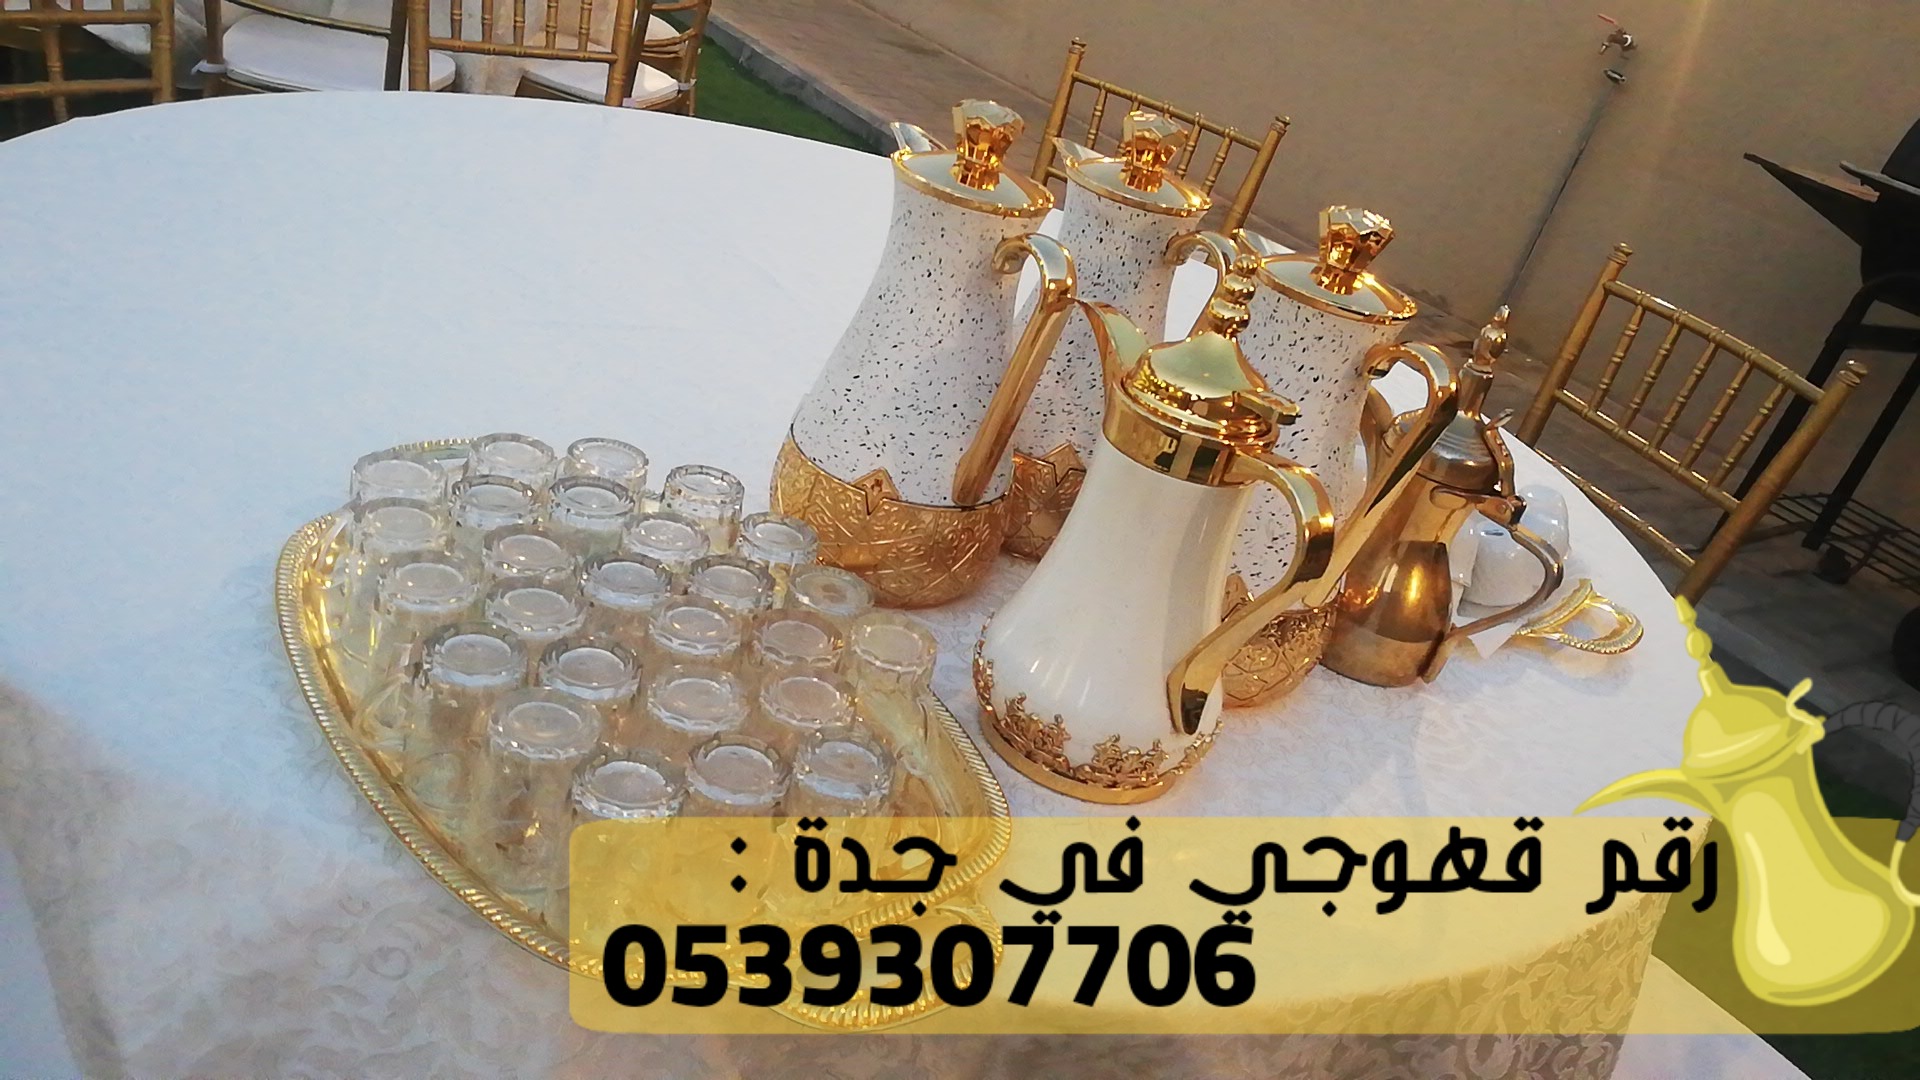 قهوجي و صبابين في جدة,0539307706